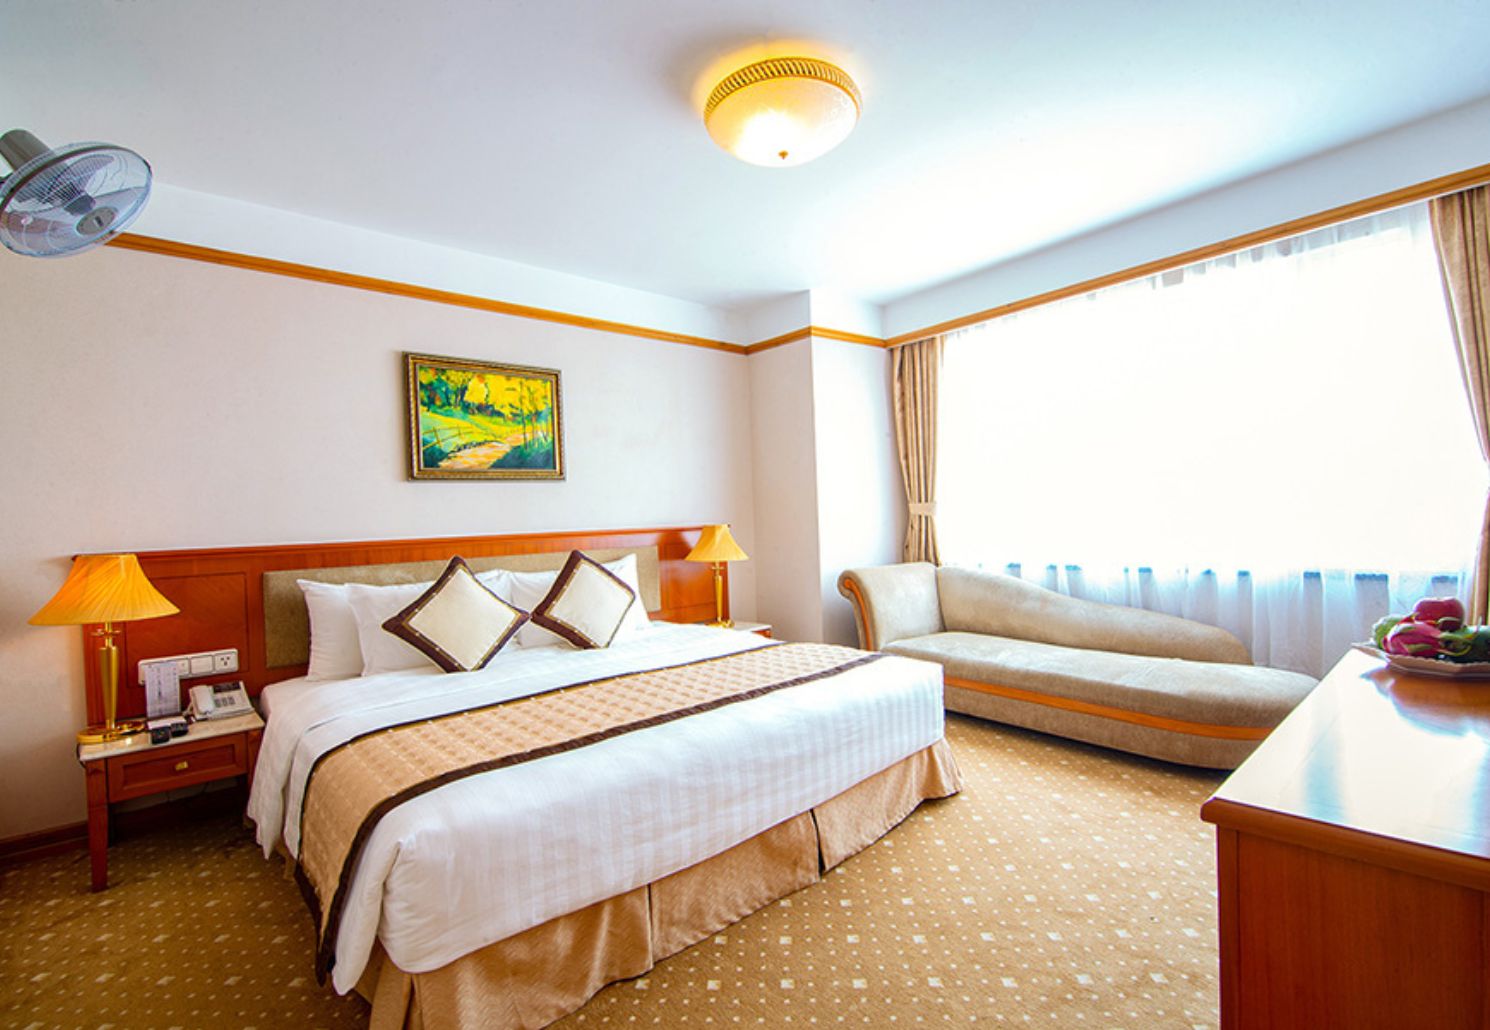 A25 Hotel and Spa, lựa chọn hoàn hảo cho kì nghỉ tại Thủ đô 8